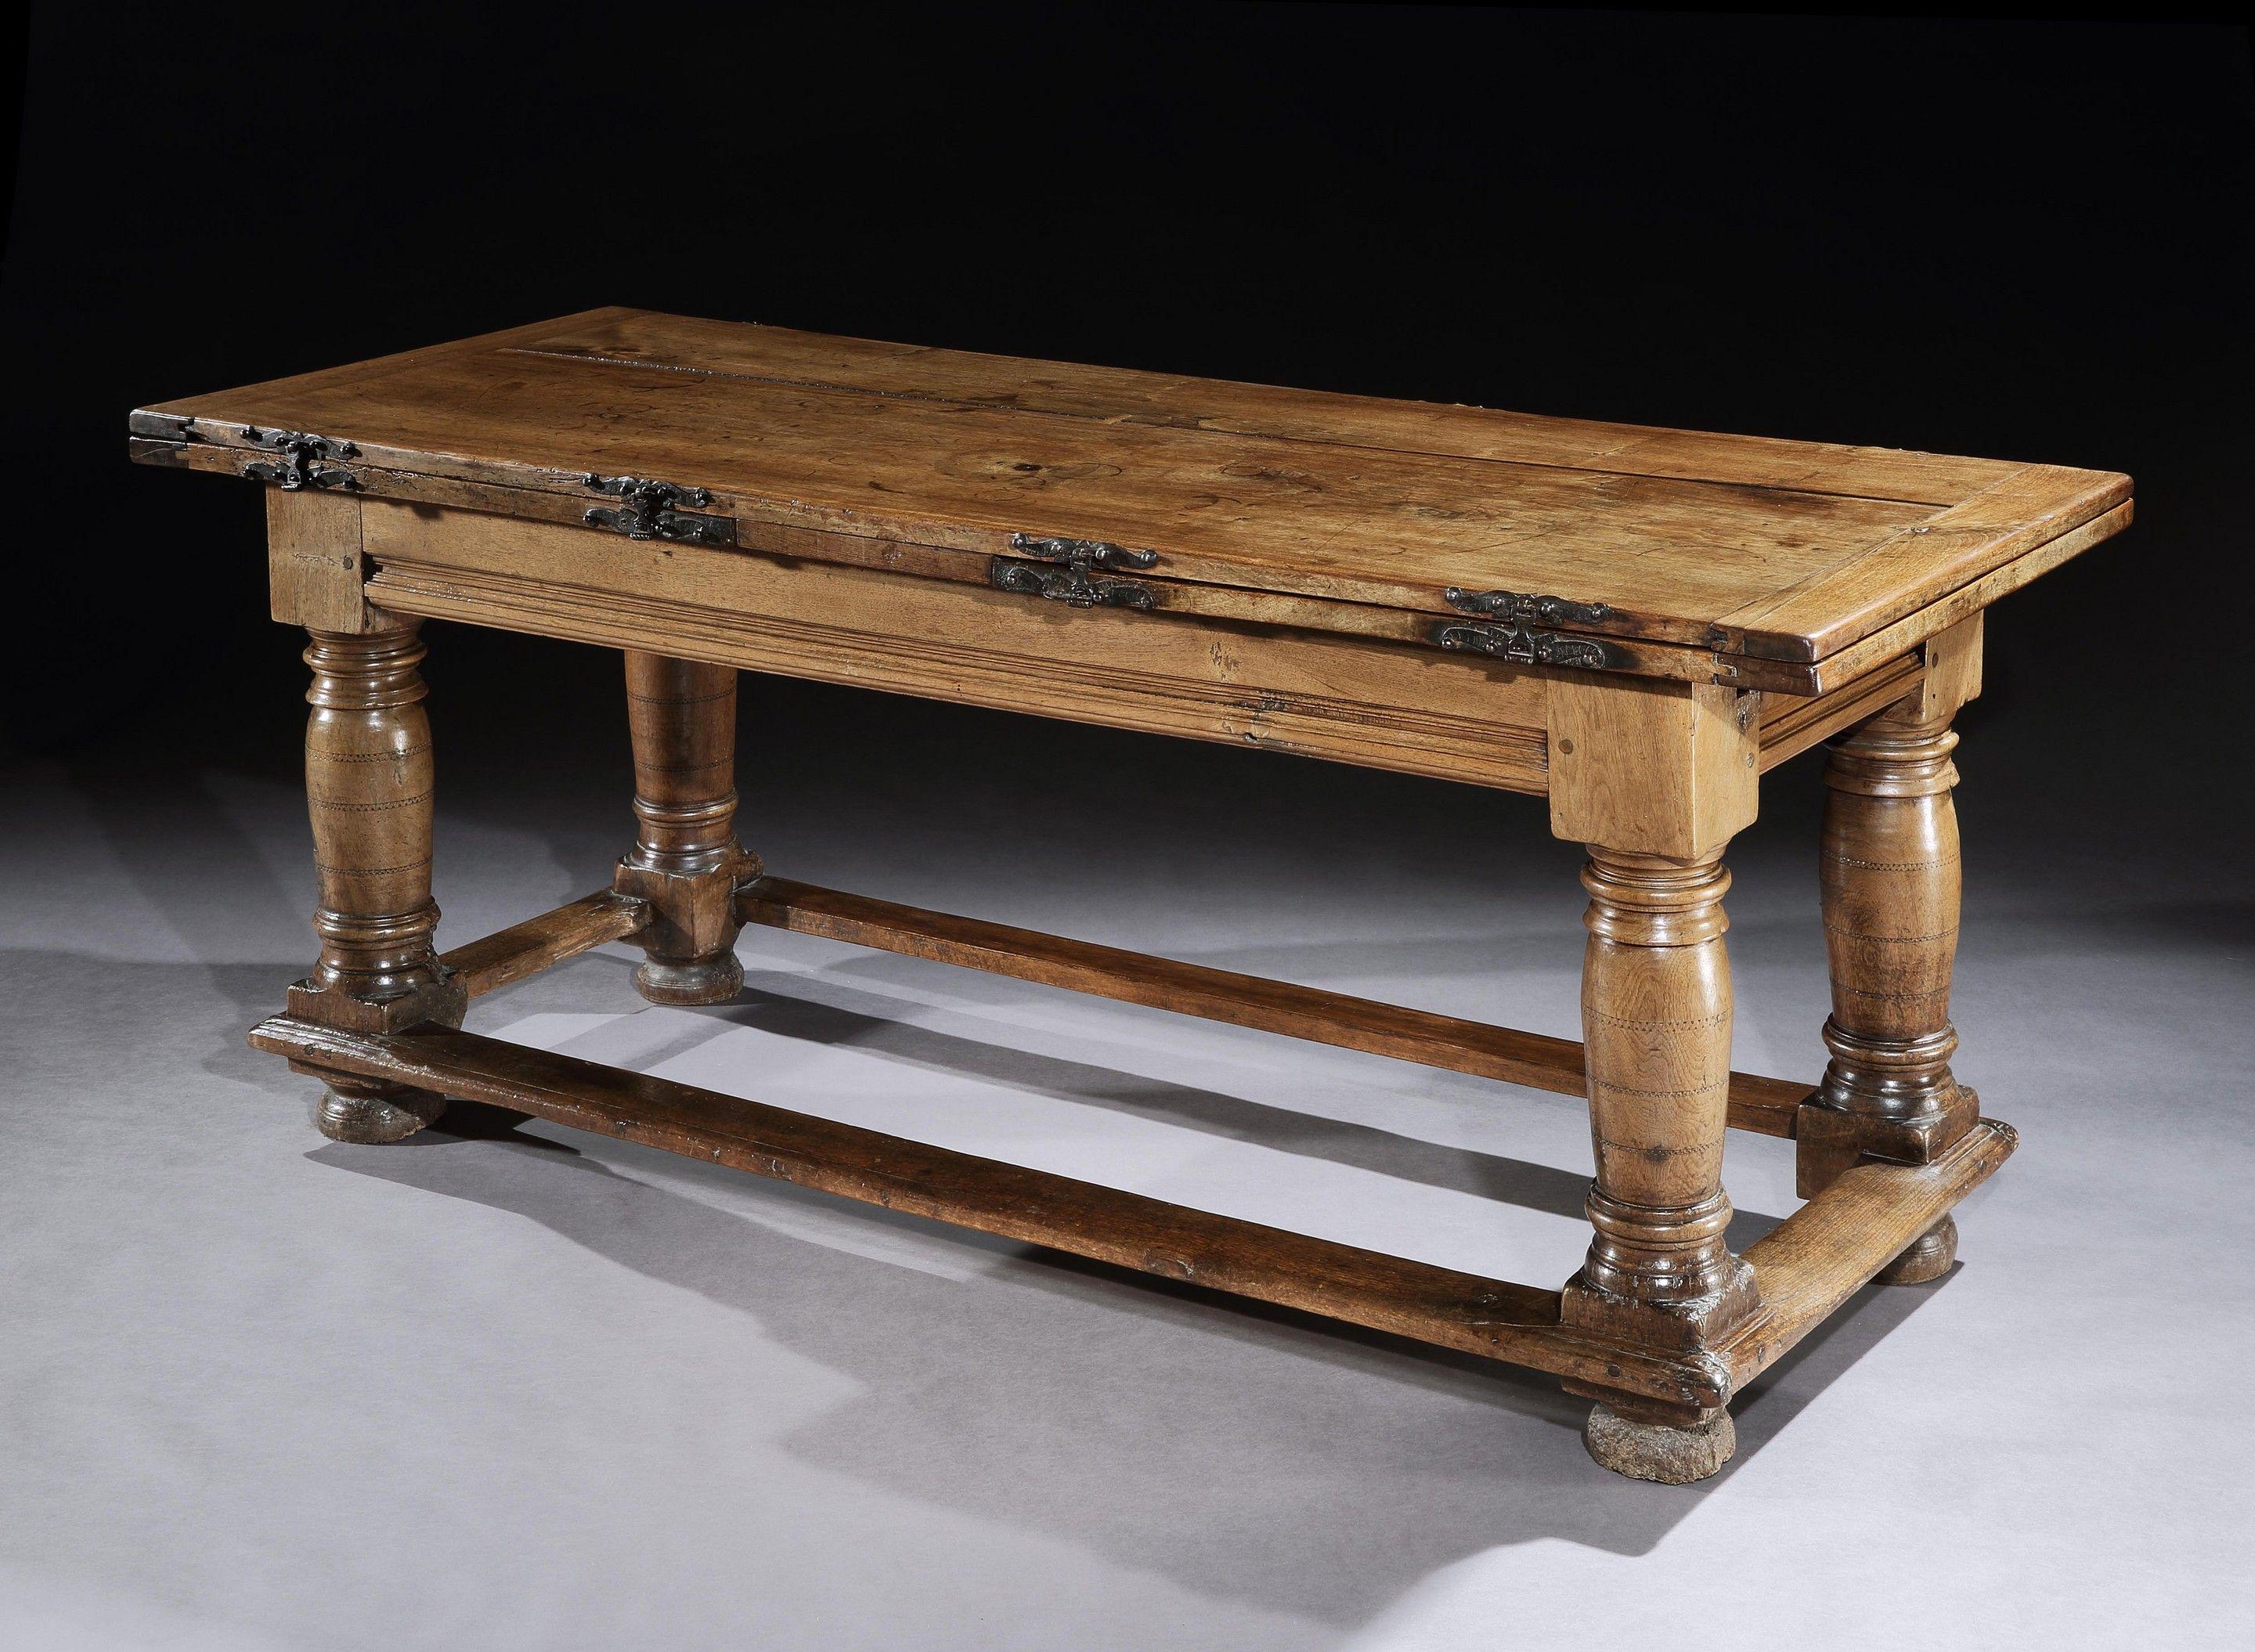 Cette table massive de 18 places présente de nombreuses caractéristiques typiques des tables à feuilles mobiles fabriquées dans le dernier quart du XVIe siècle. Il est rare de trouver sur le marché des tables à feuilles de tirage continentales